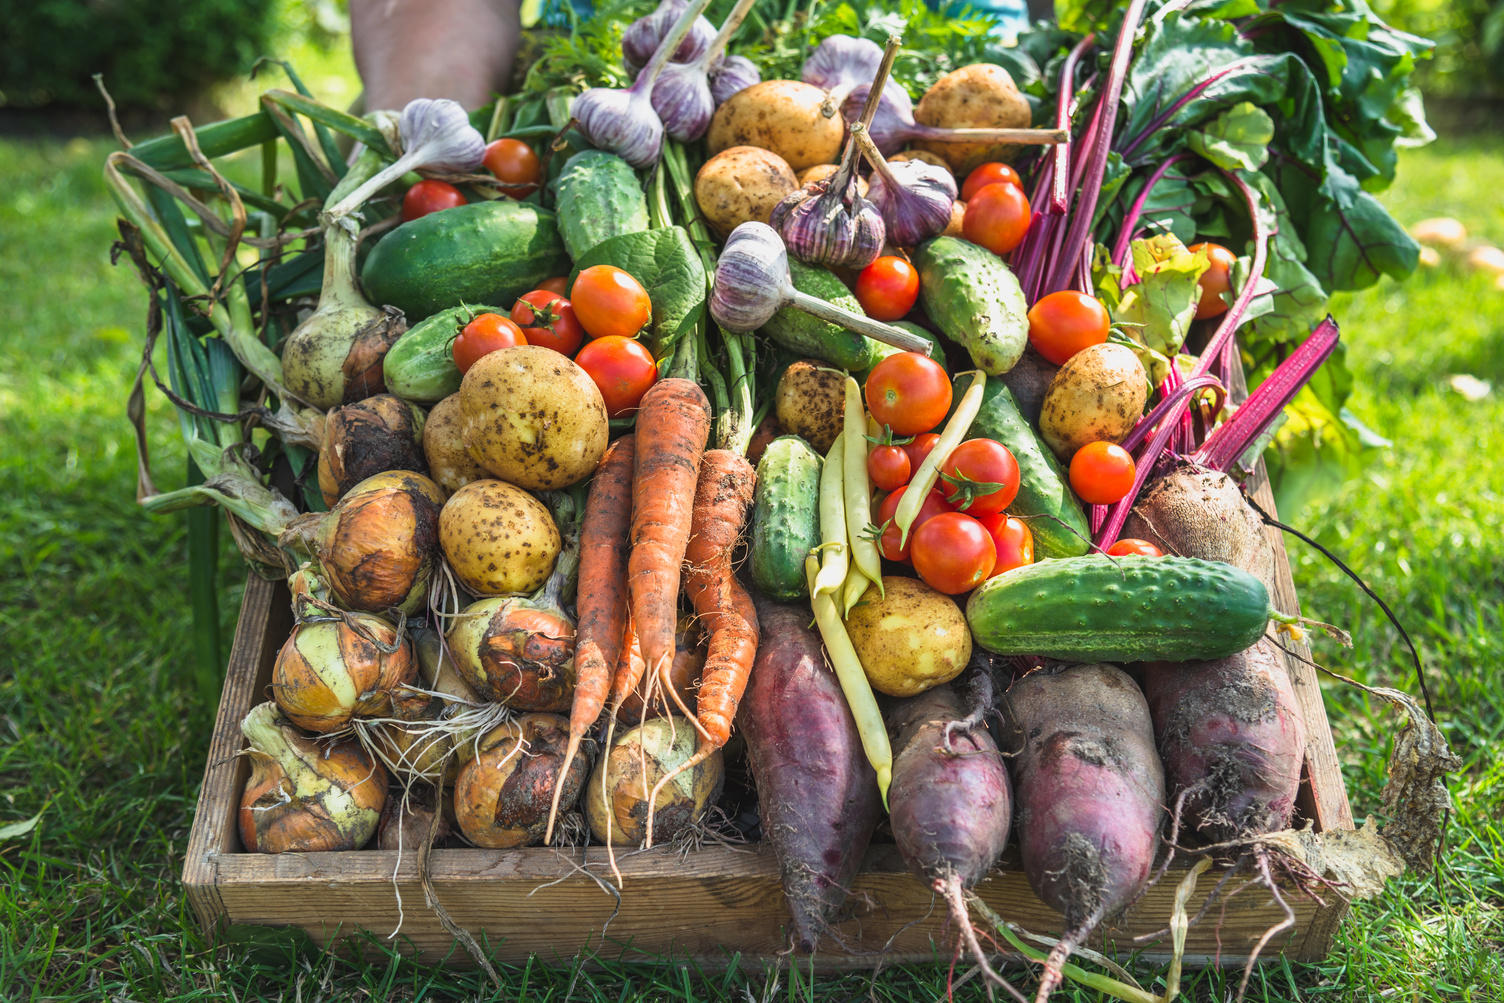 Obst- und Gemüseabteilung
In unserer Obst- und Gemüseabteilung wartet auf Sie ein reichhaltiges Sortiment. Gerade bei Bio-Produkten finden Sie eine große Auswahl bei uns. Wir bieten Ihnen viele Wahlmöglichkeiten bei unseren Gemüsesalaten an und versorgen Sie mit vielfältigen Variationen von Exoten.